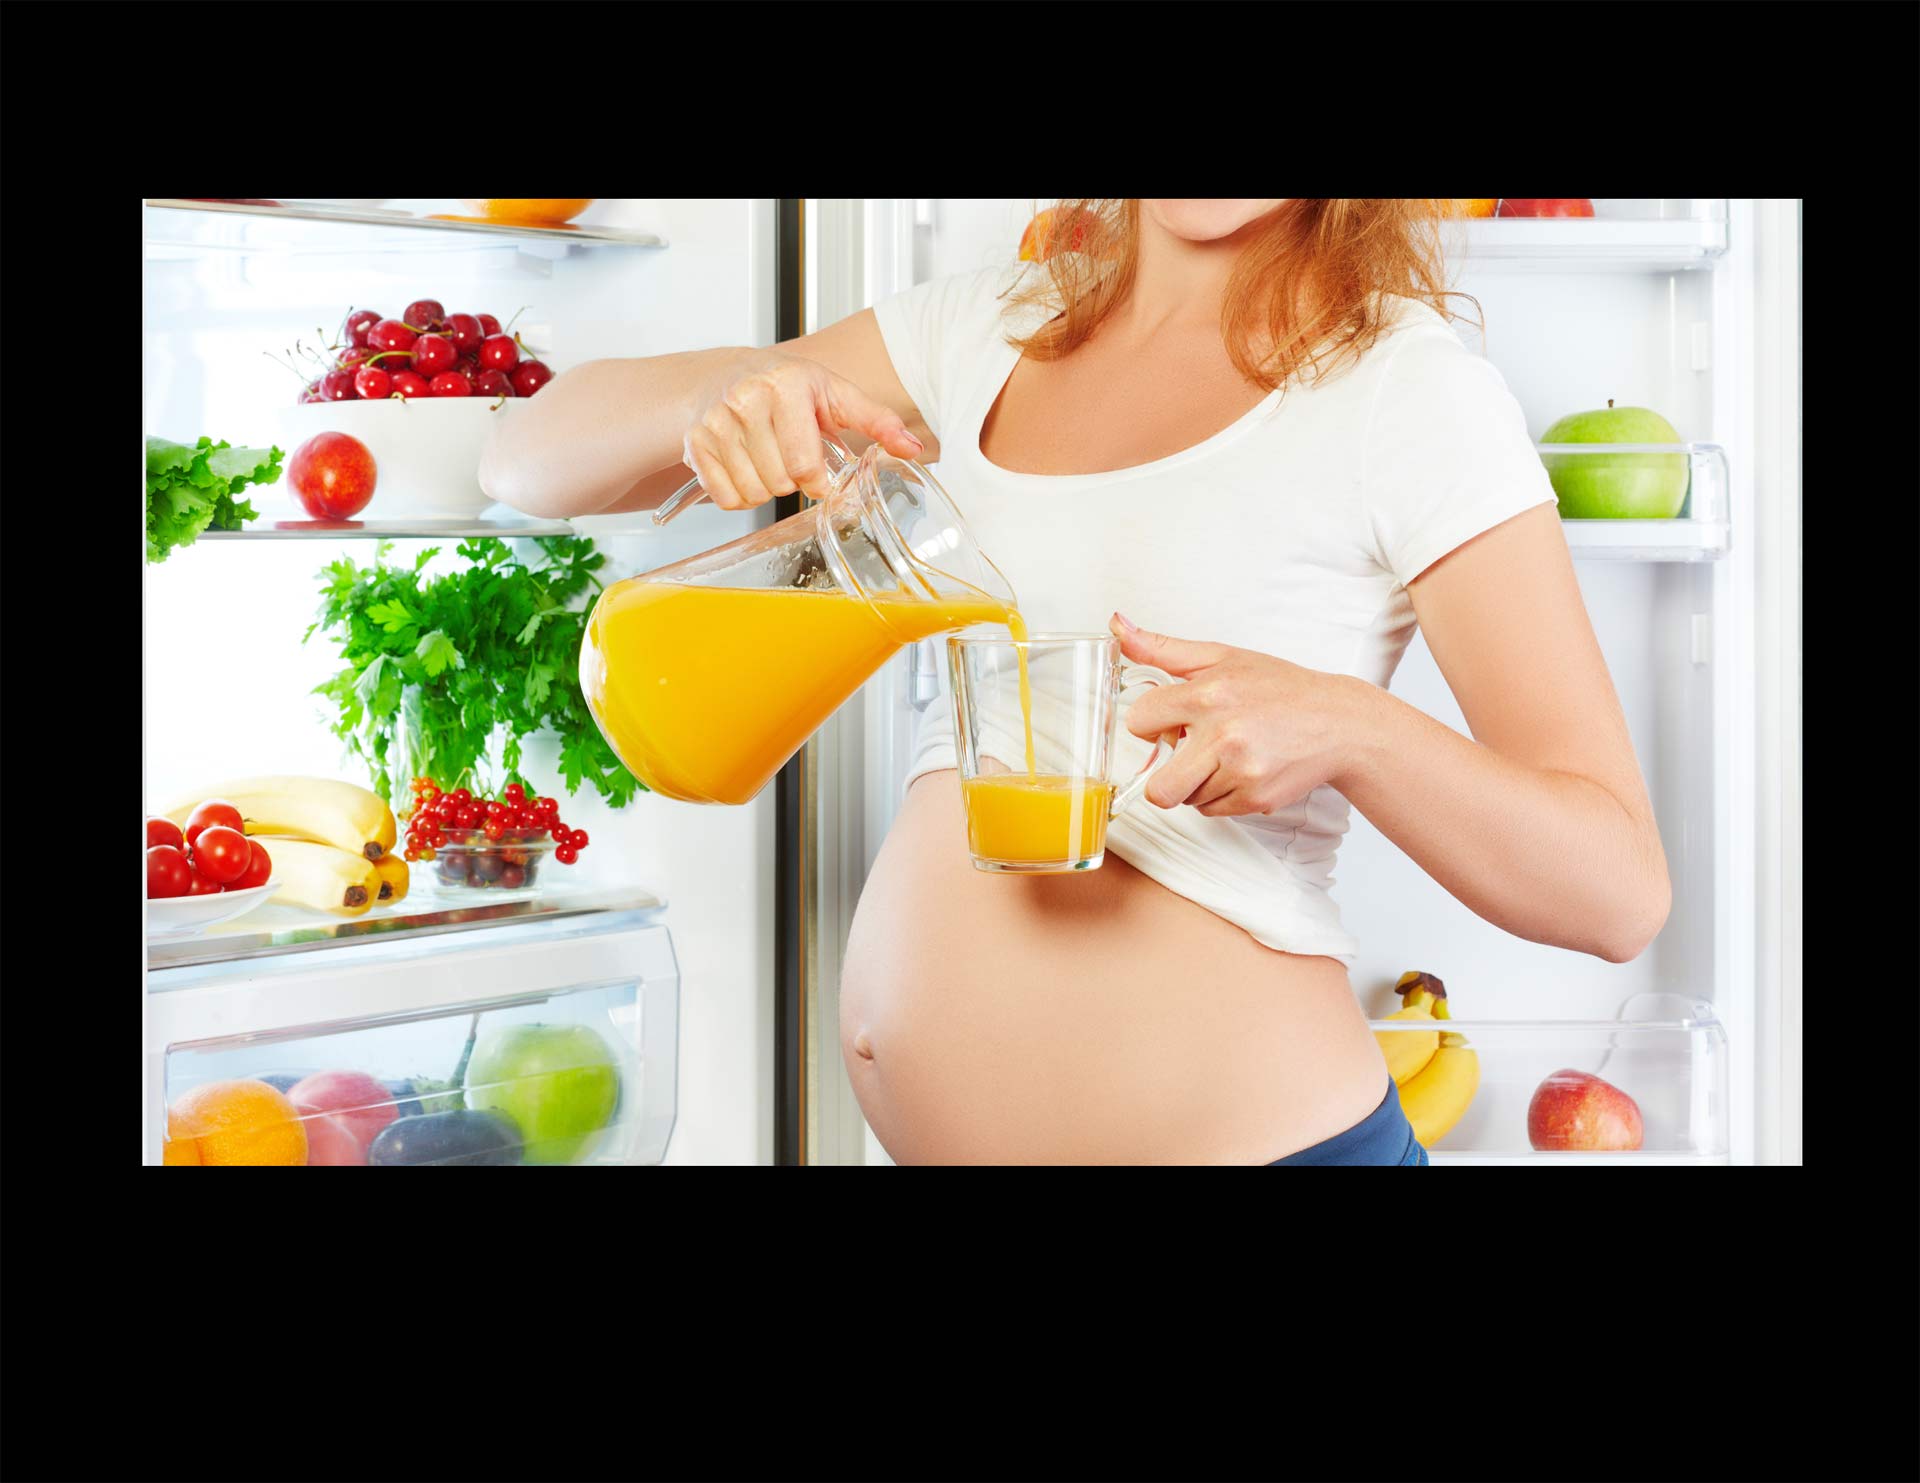 El consumo de edulcorantes durante el embarazo podría generar sobrepeso en el futuro niño